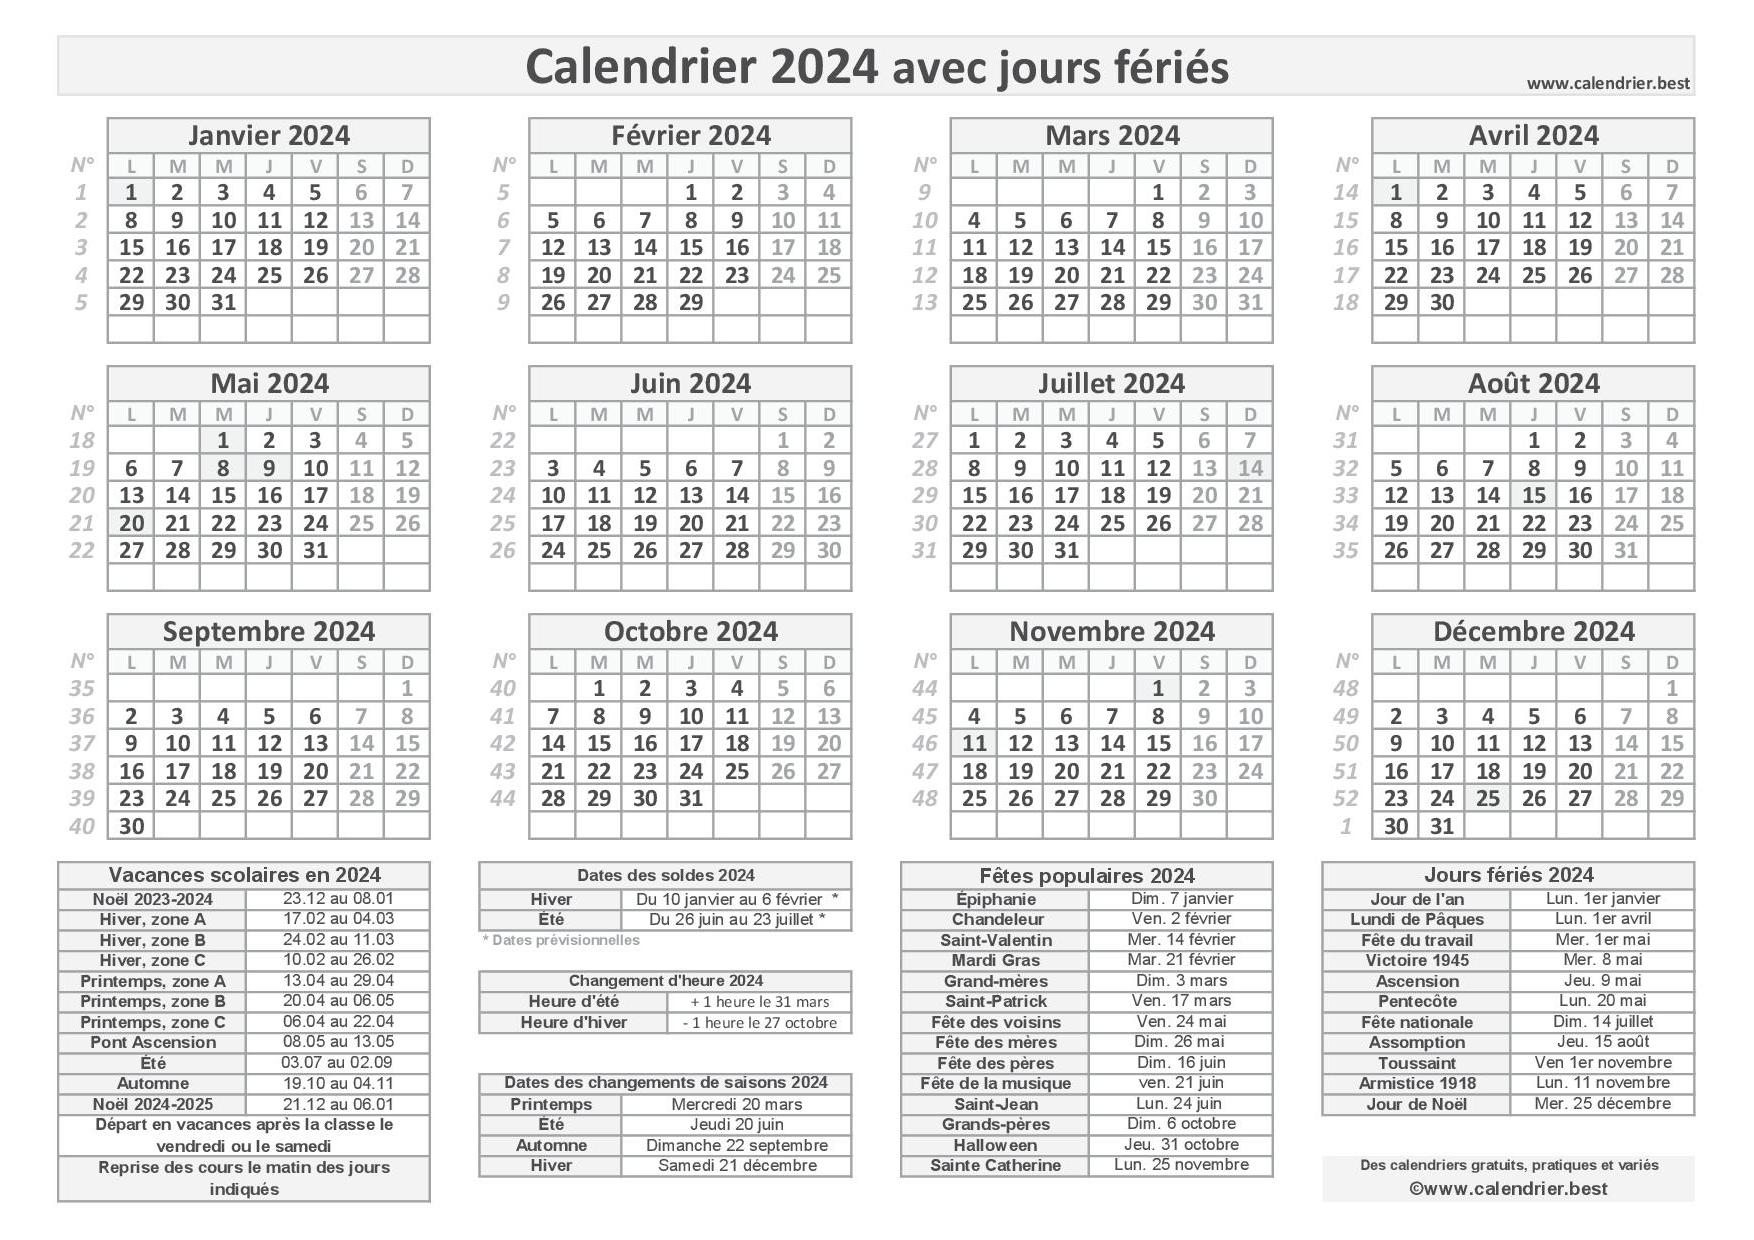 Calendrier 2024 à imprimer avec jours fériés et jours à poser